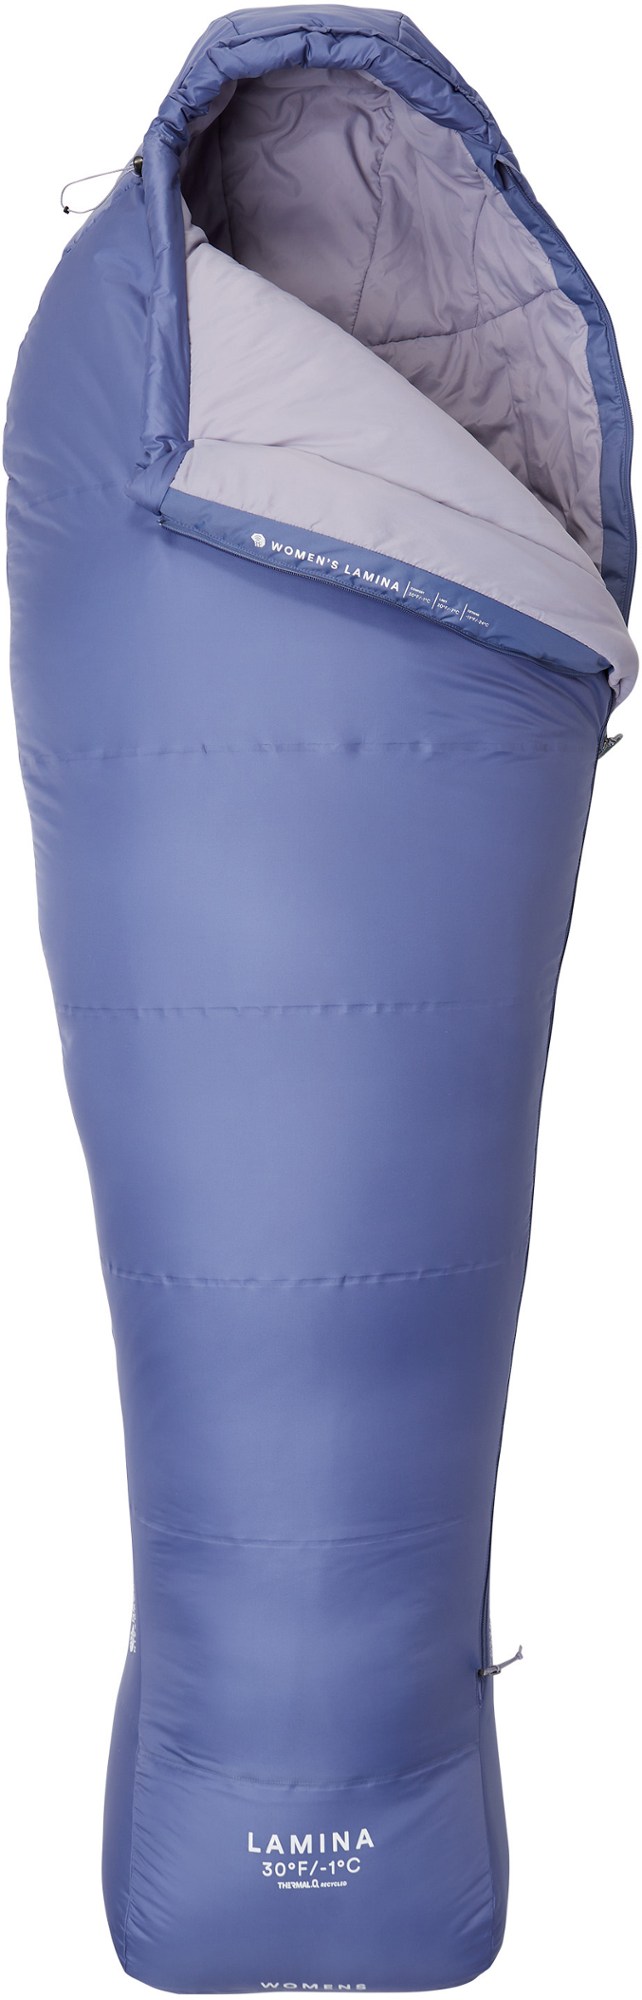 Спальный мешок Lamina 30 — женский длинный Mountain Hardwear, синий lamina комплект из 5 корзин для сист макси колонна 450 мм cem45cm5lgm